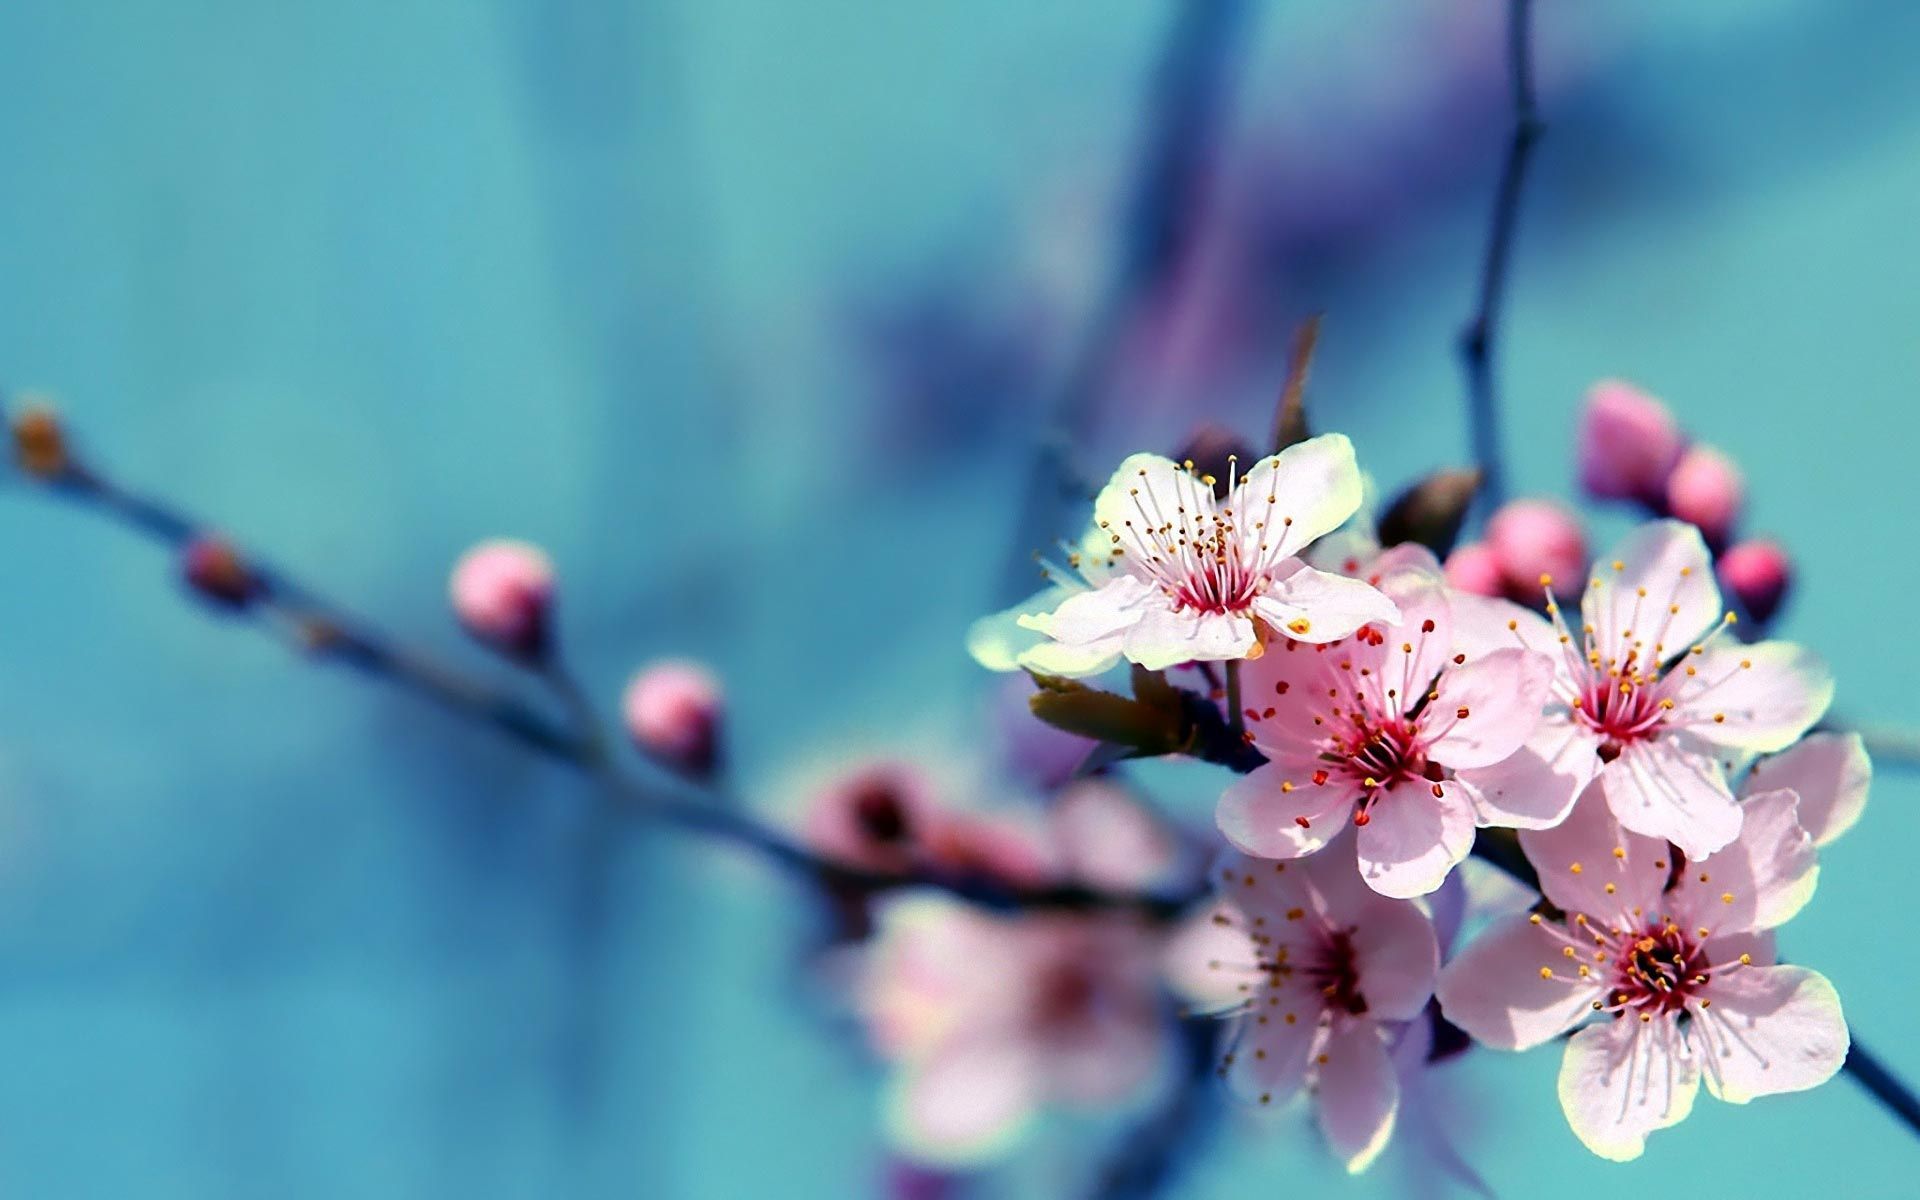 Cherry Blossom Flower Wallpaper. Cherry Blossom Wallpaper, HD Flower Wallpaper, Beautiful Flowers HD Wallpaper